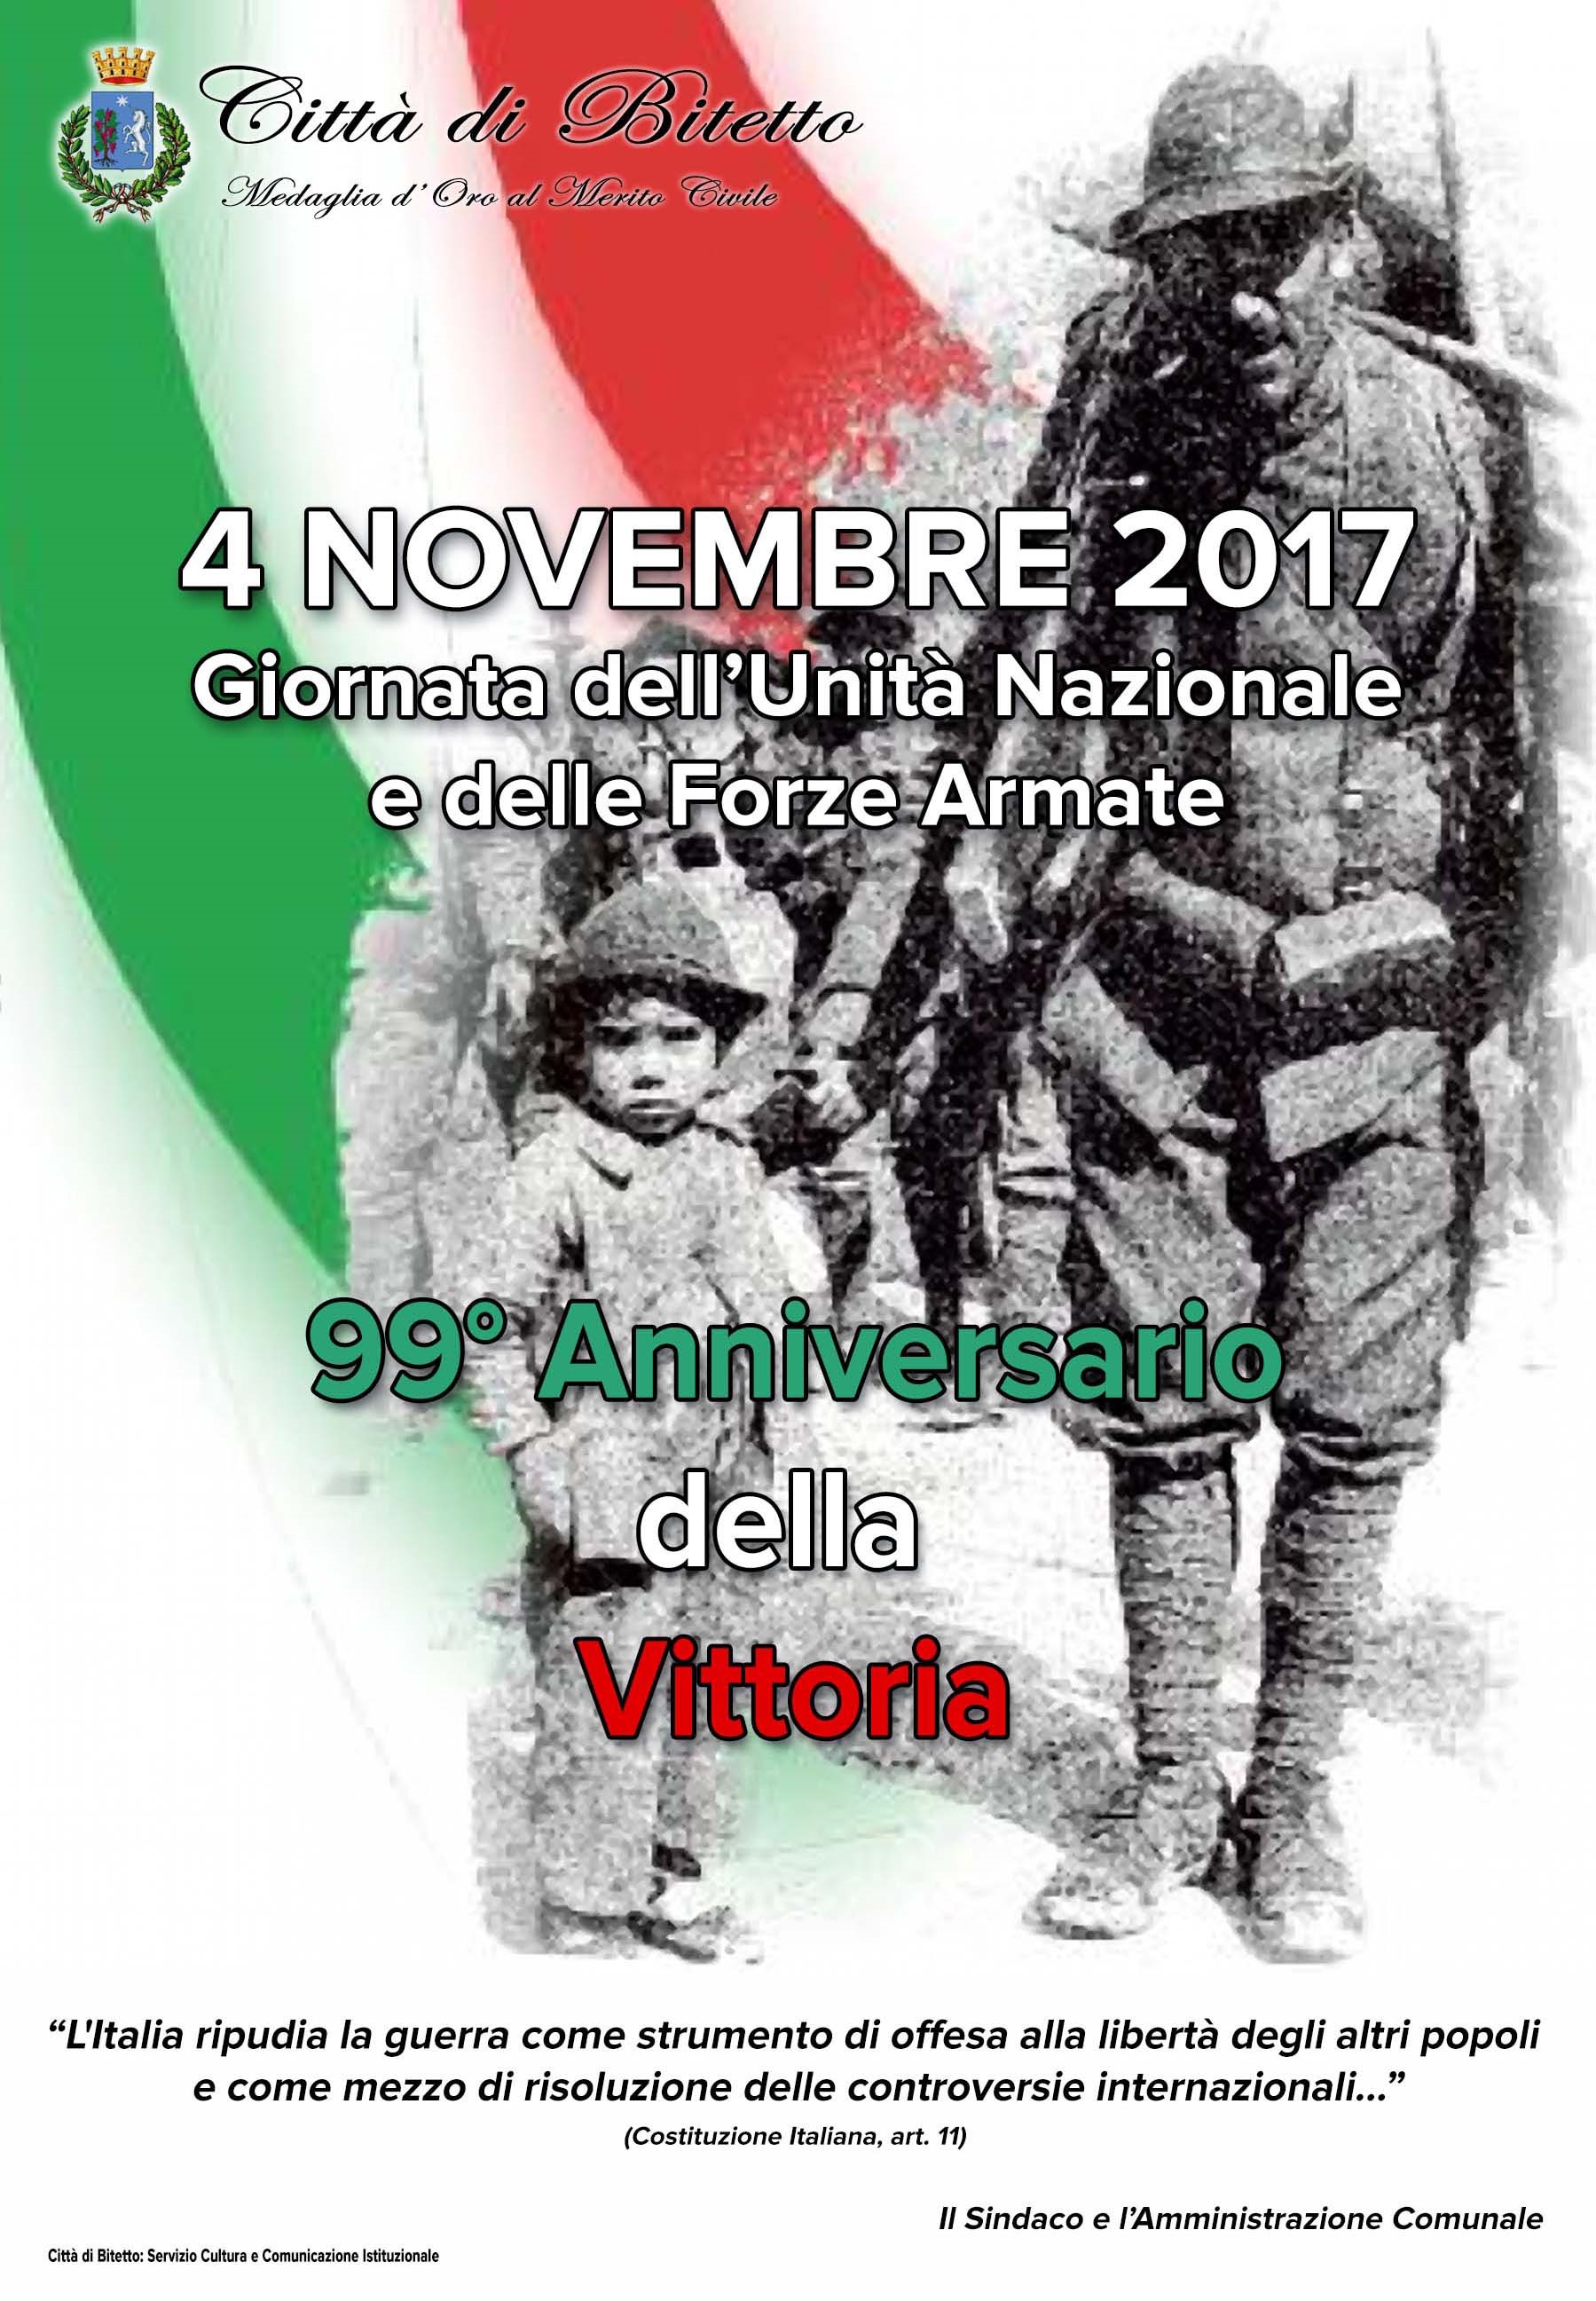 4 novembre 2017: FESTA DELL’UNITA’ NAZIONALE E GIORNATA DELLE FORZE ARMATE